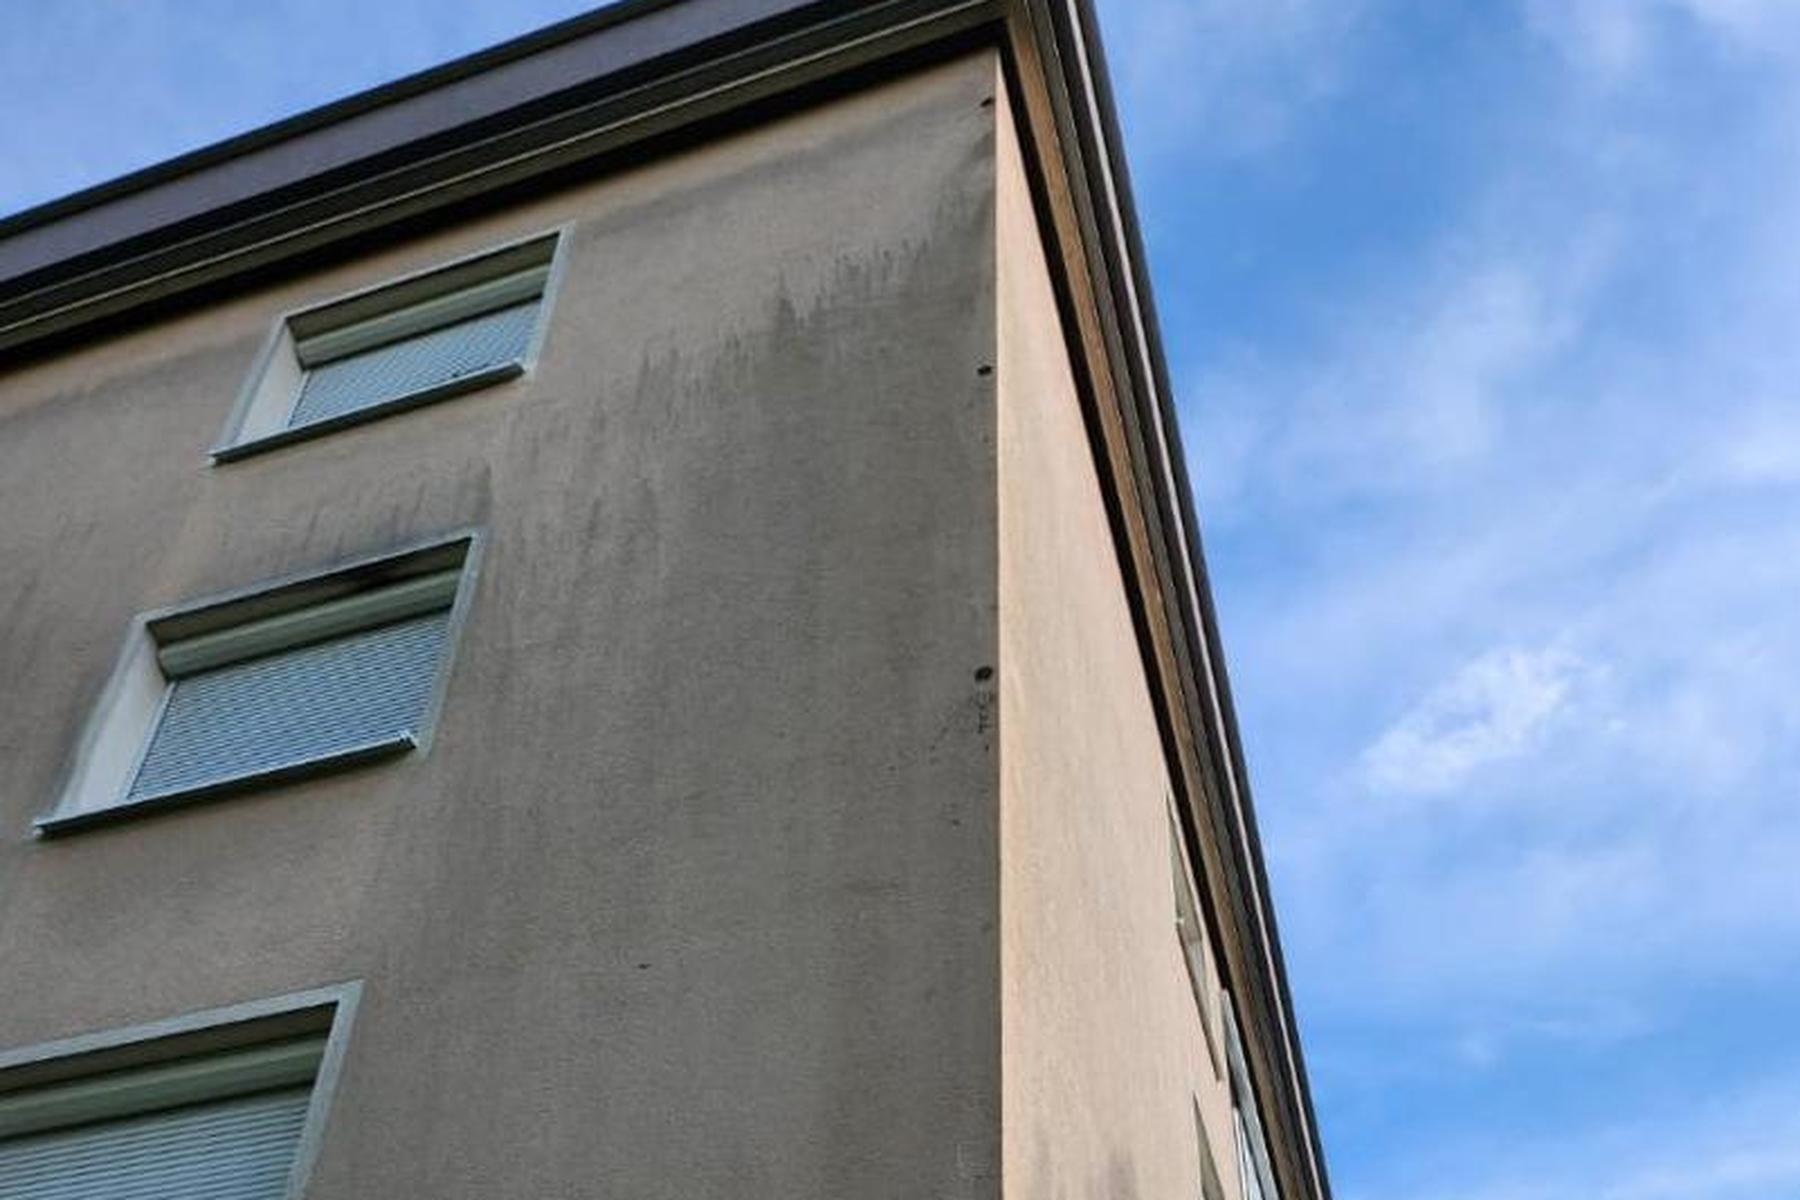 Jungvögel drinnen?: Verschlossene Löcher in Hausfassade sorgen in Kärnten für Aufregung